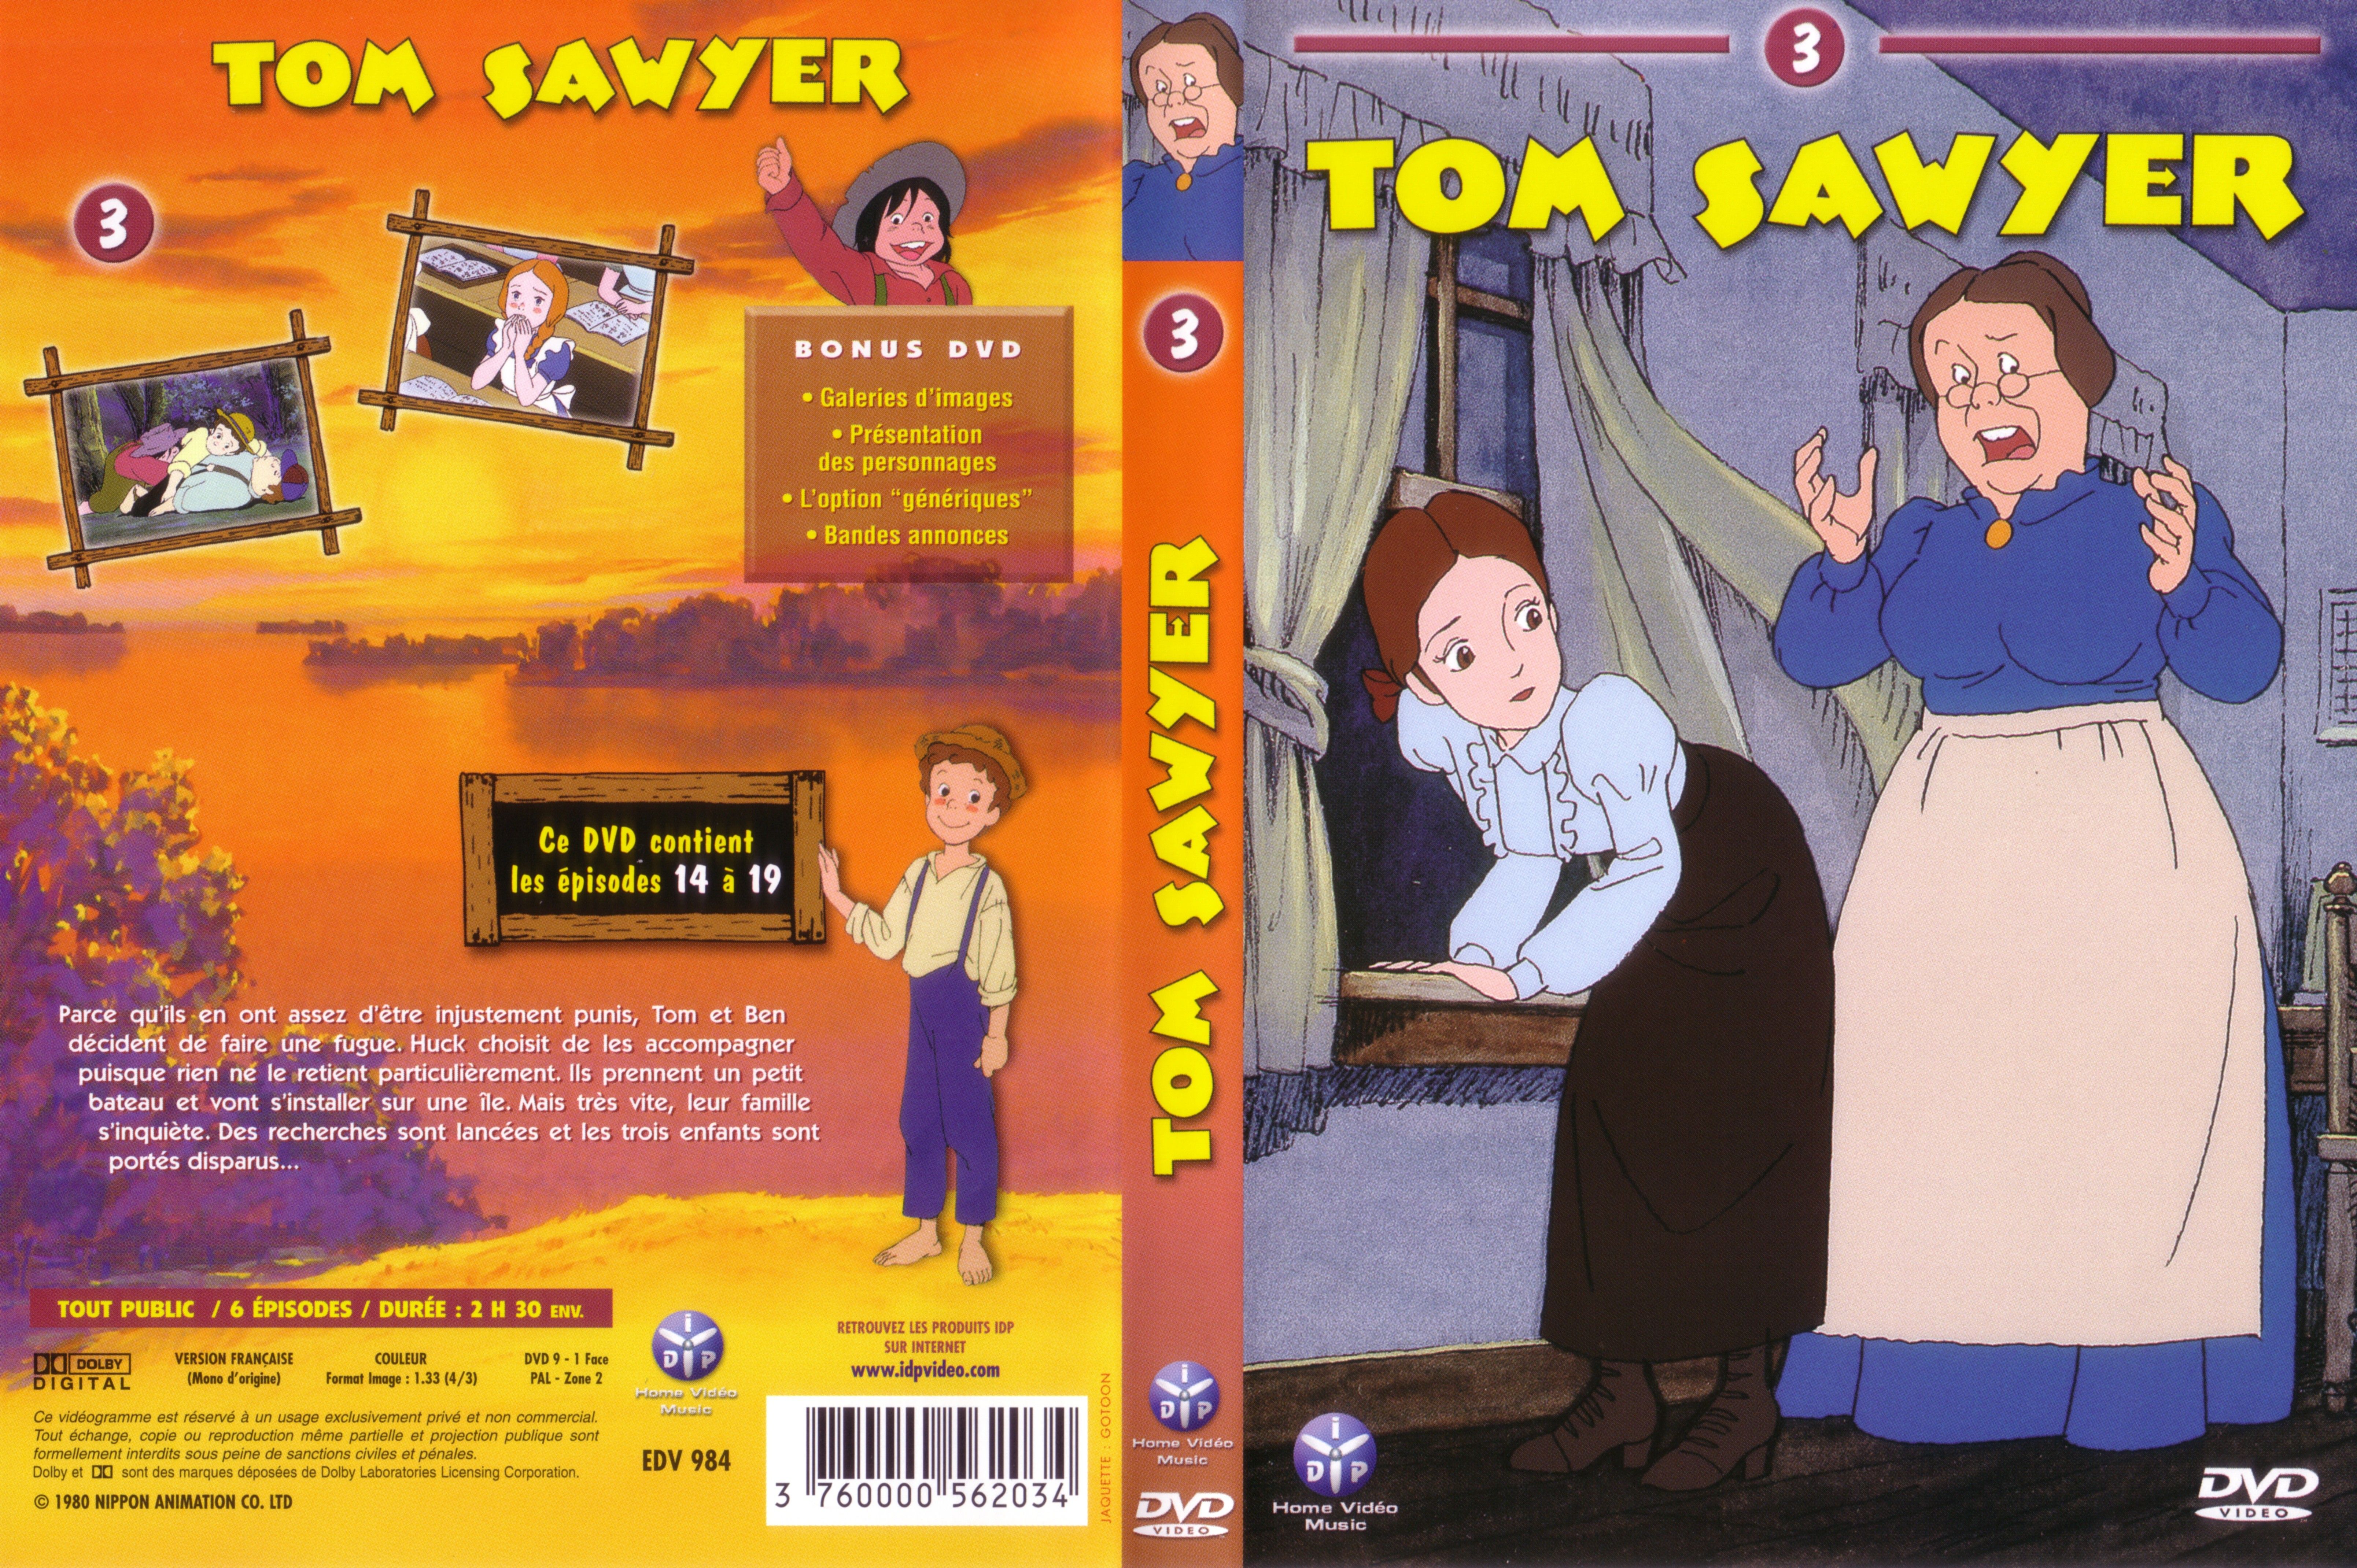 Jaquette DVD Tom Sawyer vol 3 v2